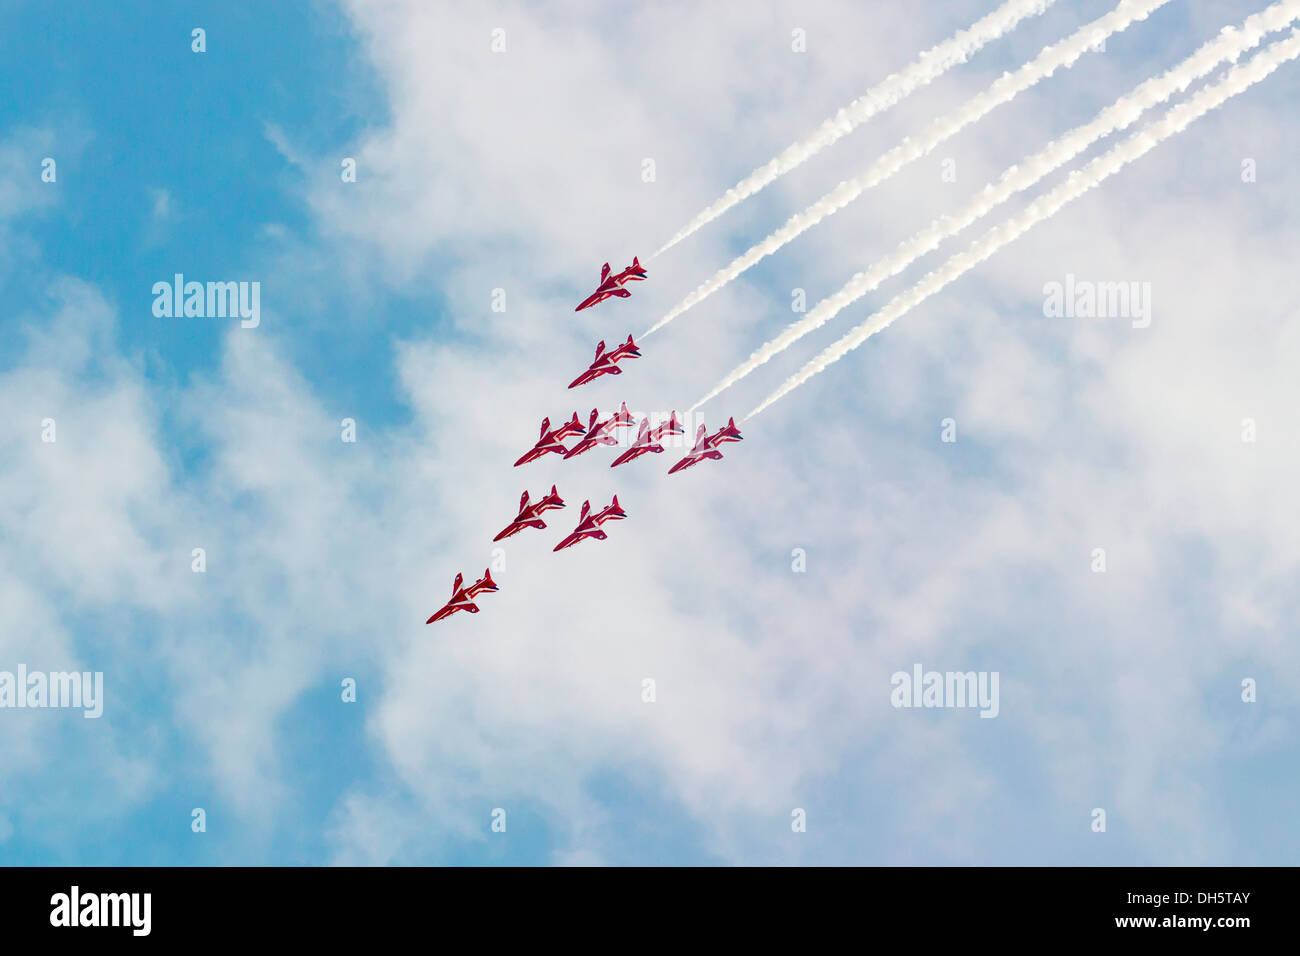 Les flèches rouges display team volant en formation. Banque D'Images